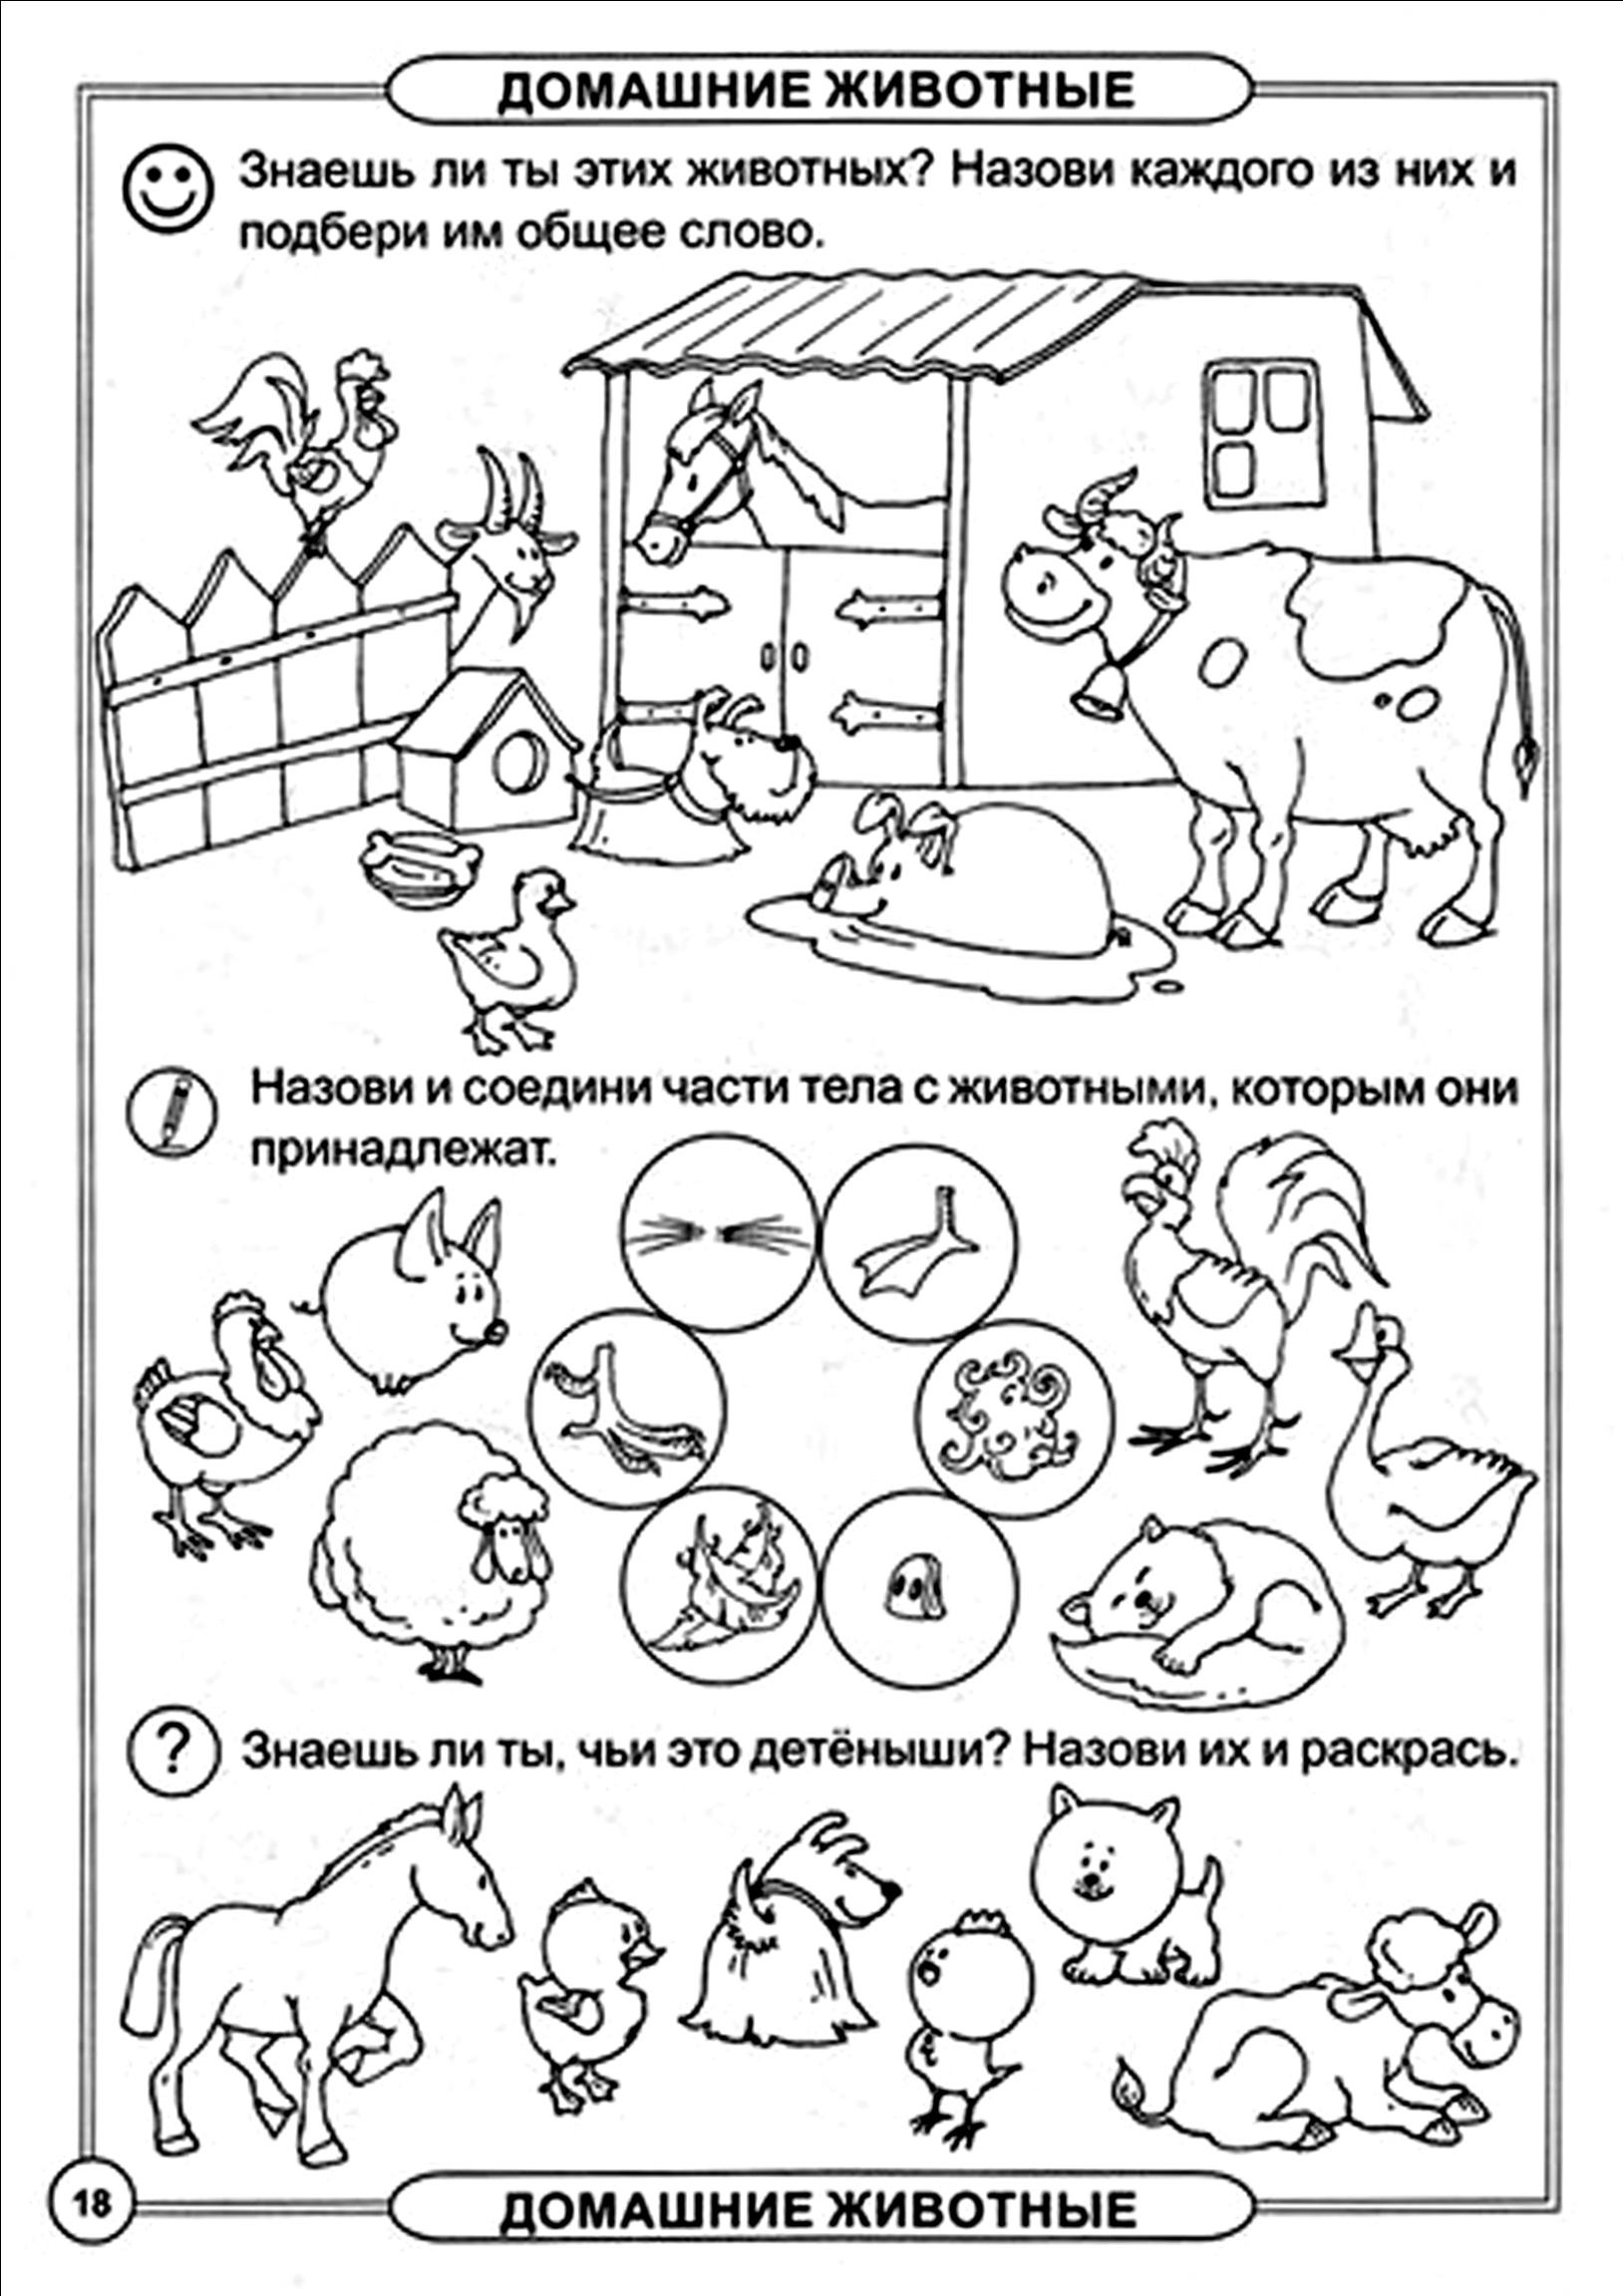 Домашние задания возраст. Домашние животные задания для дошкольников 6-7 лет. Домашние животные задания для детей. Домашние животныехадания. Домашнее животные задания для дошкольников.